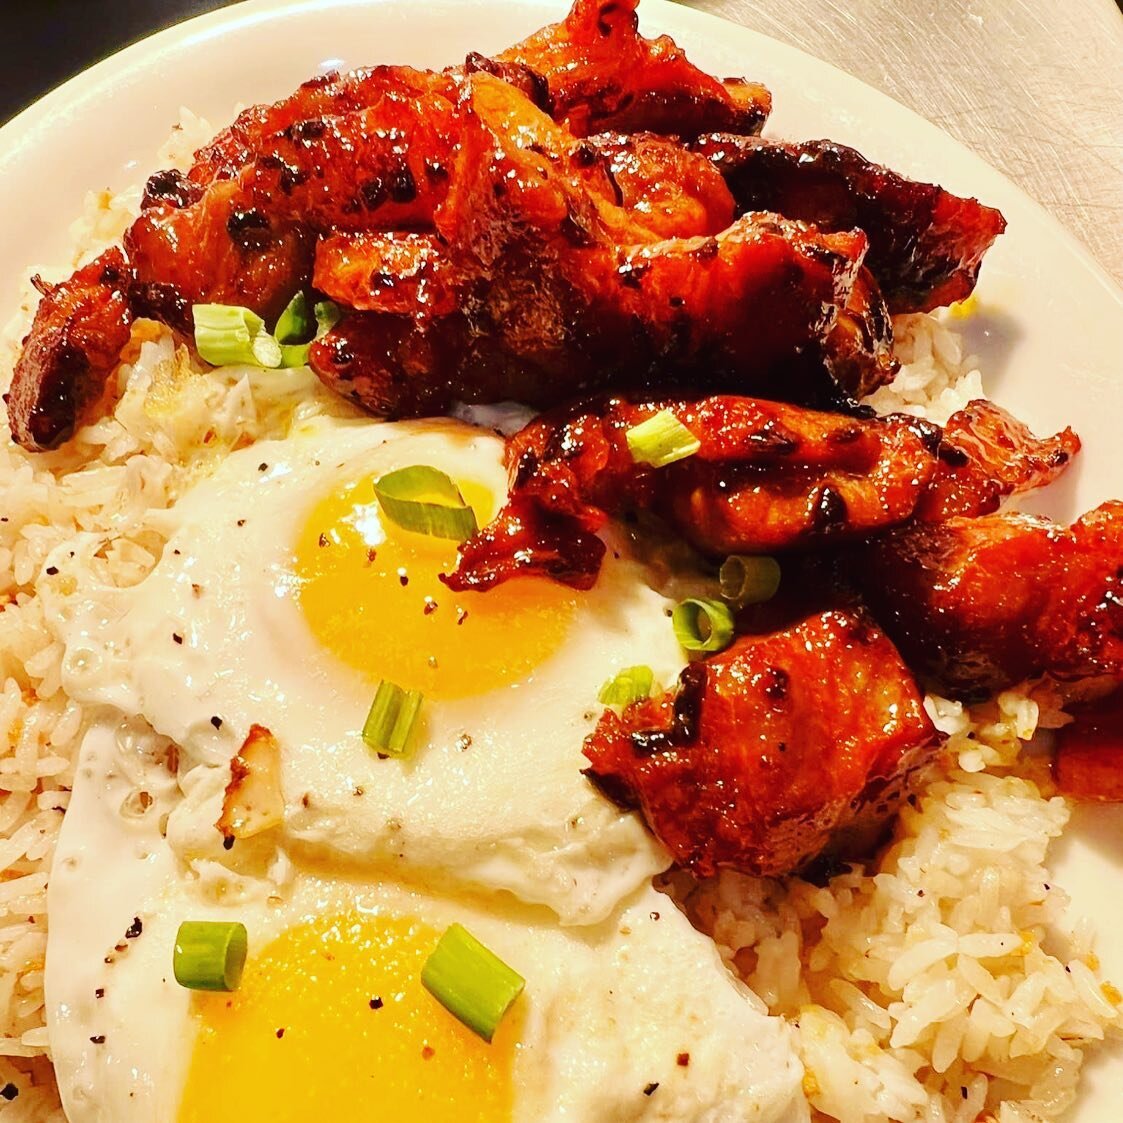 Filipino brunch all day 🍳 #broadwayfoodhall #foodhall #urbanalove #chambana